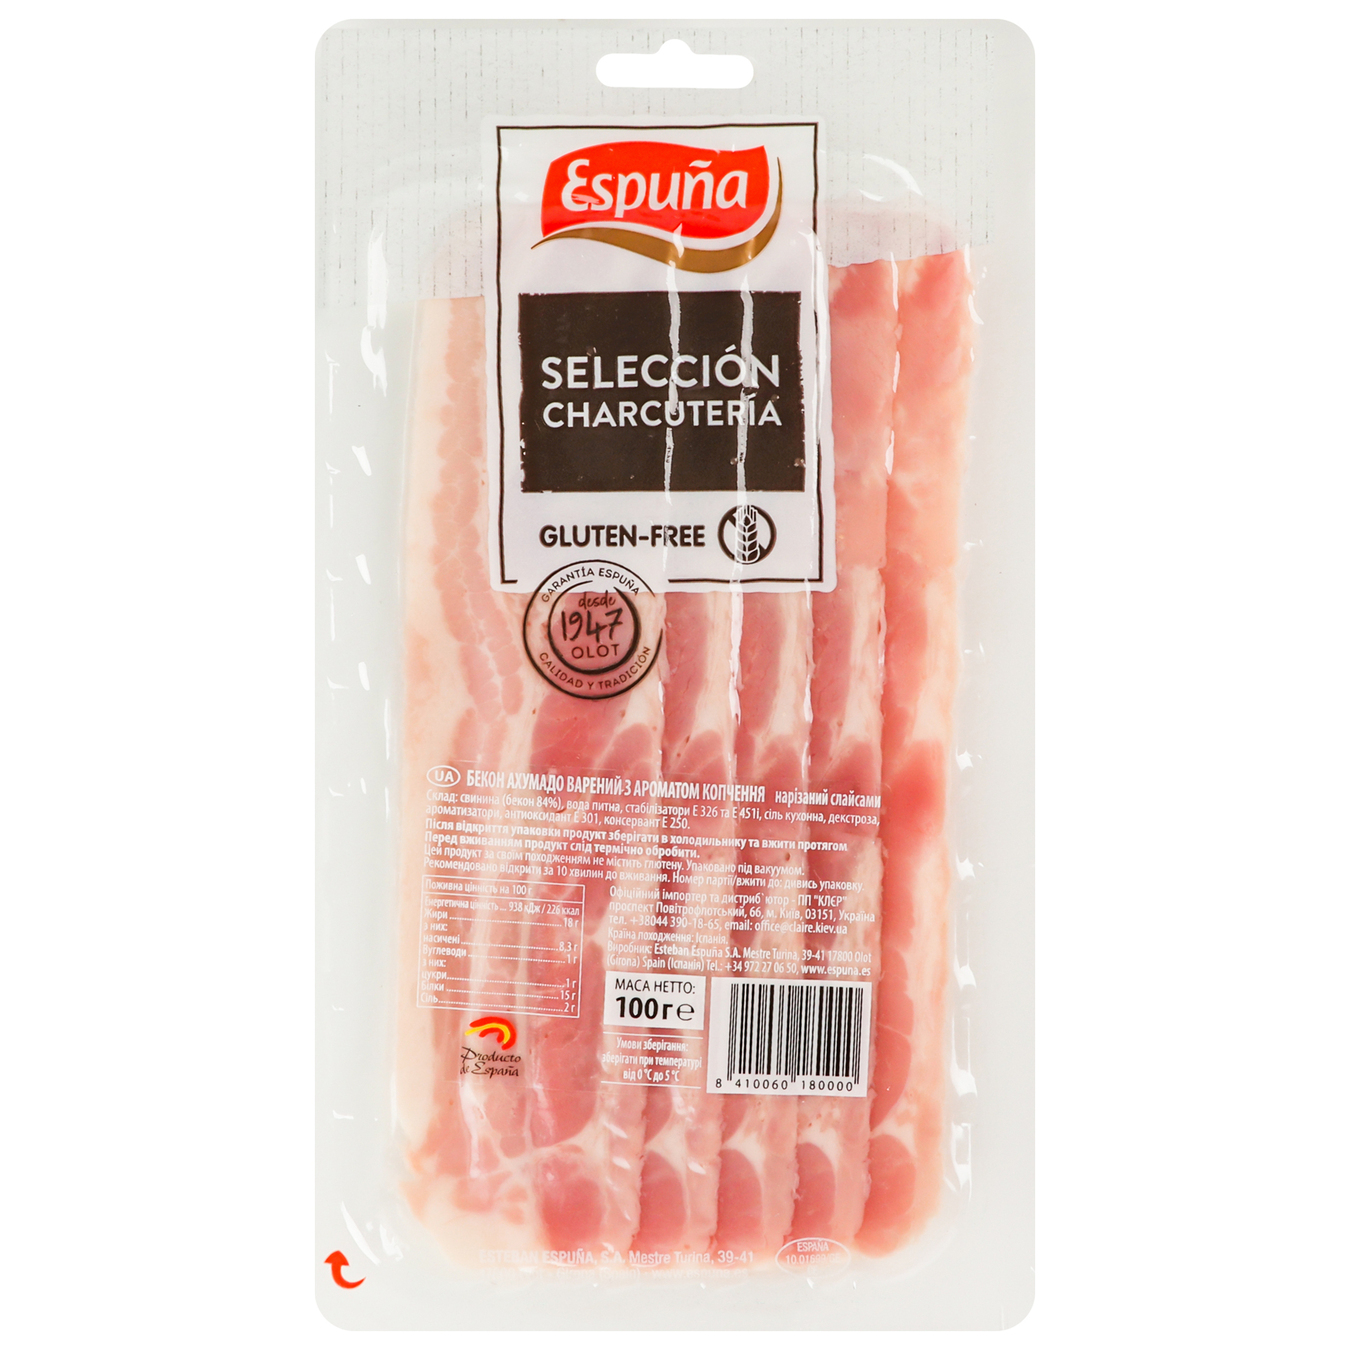 Bacon Ahumado Espuna w/c 100g